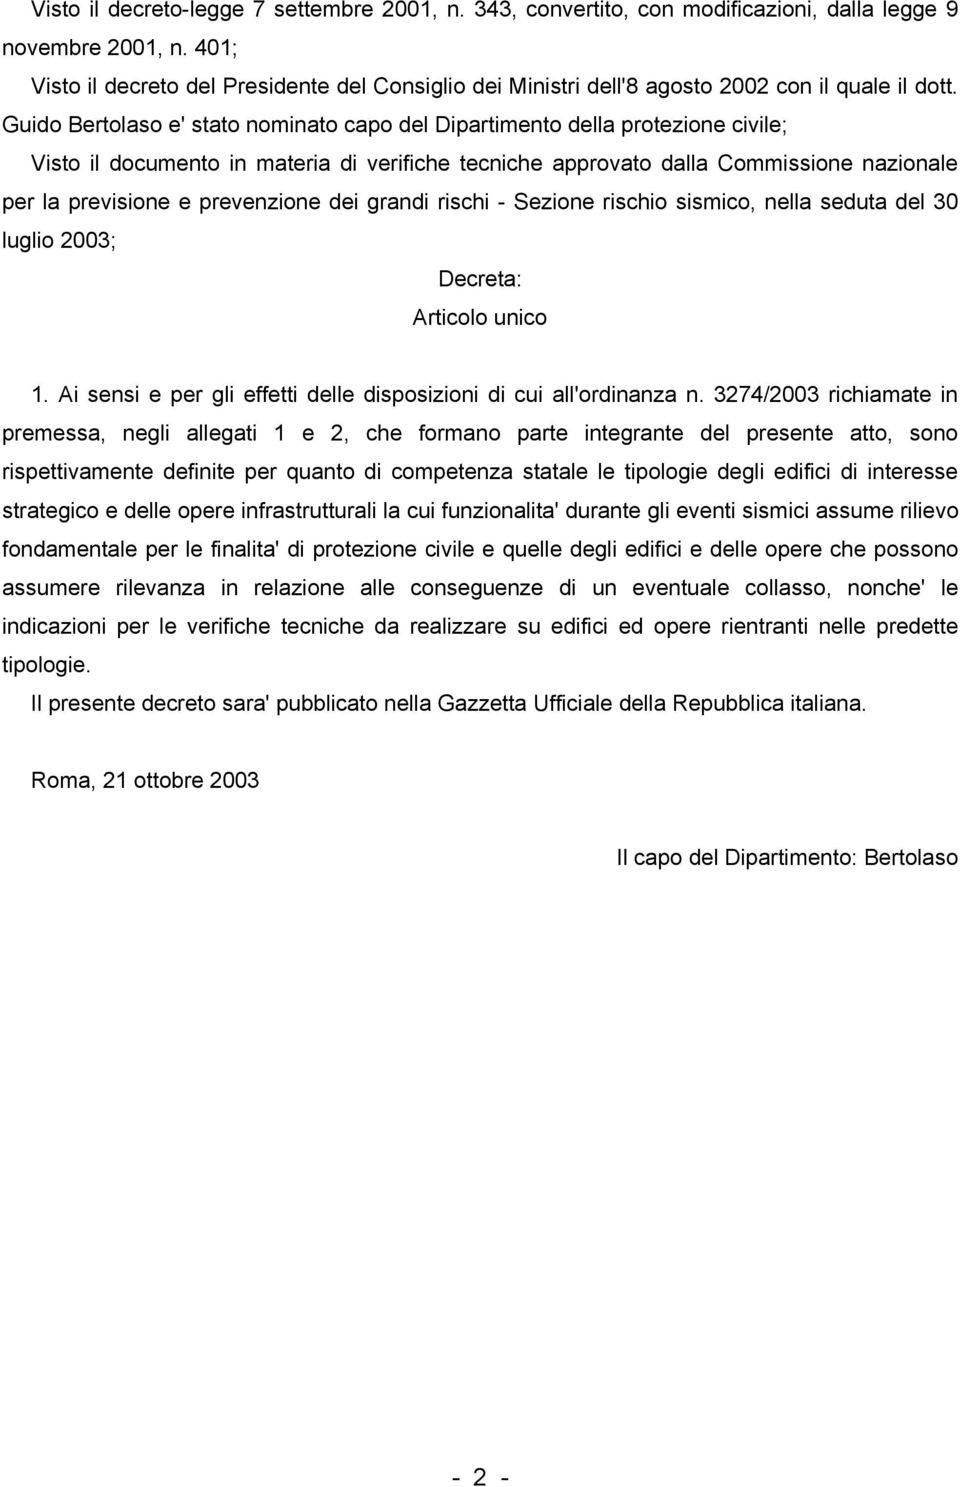 Guido Bertolaso e' stato nominato capo del Dipartimento della protezione civile; Visto il documento in materia di verifiche tecniche approvato dalla Commissione nazionale per la previsione e